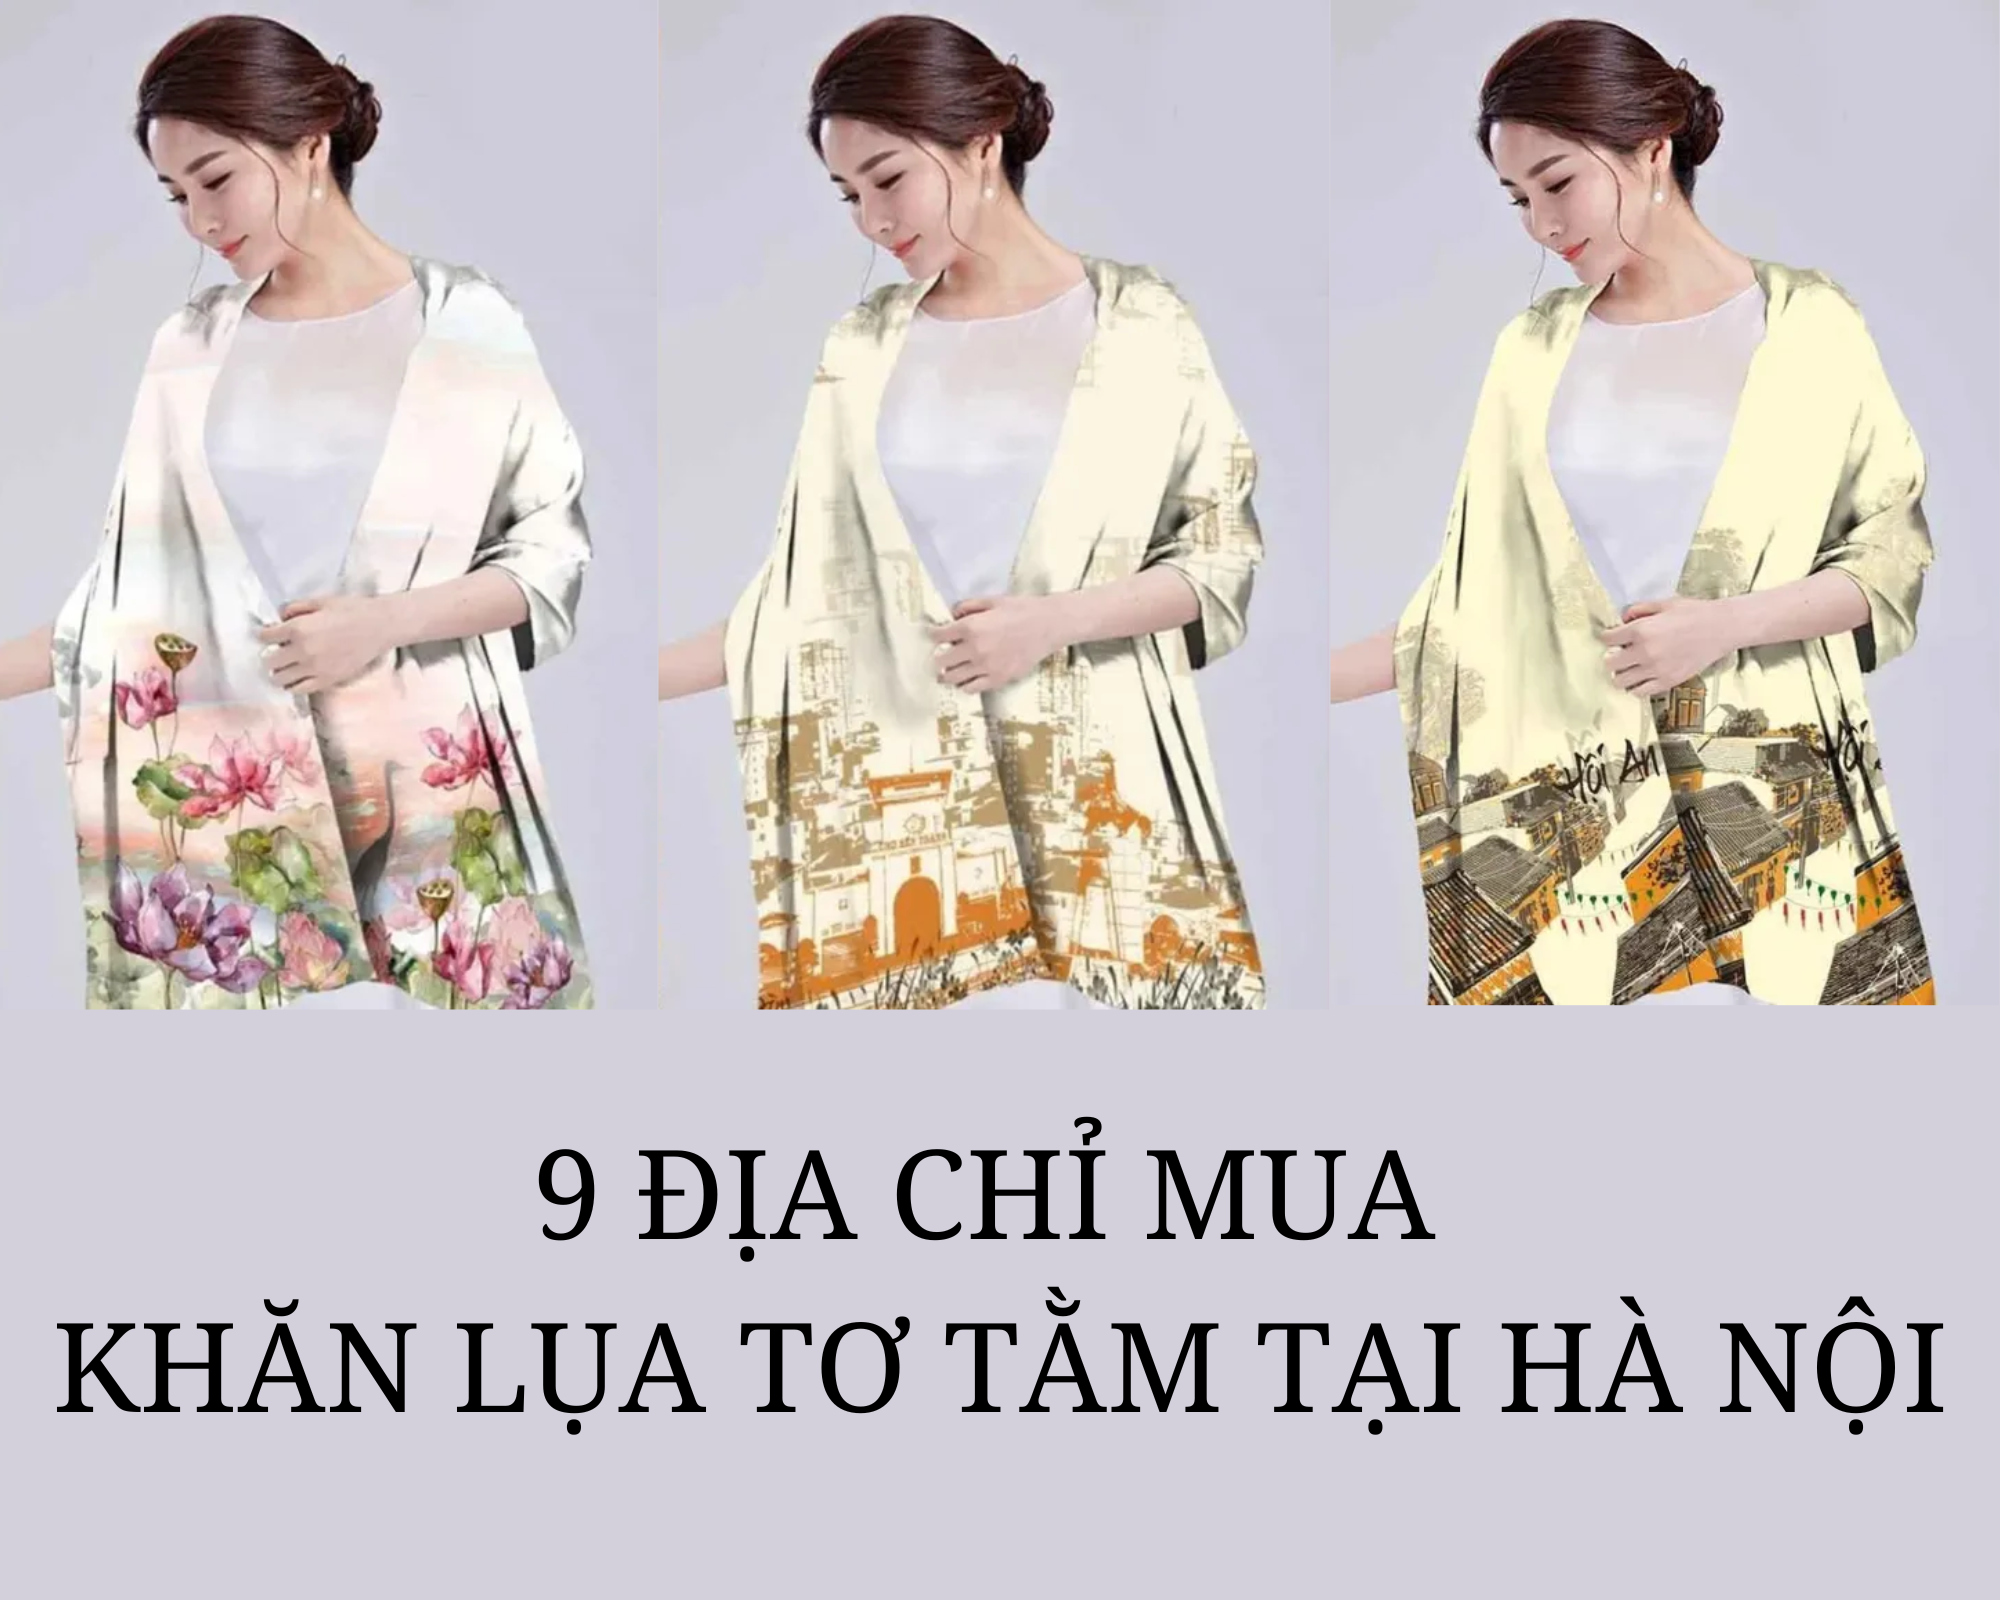 9 Địa chỉ mua khăn lụa tơ tằm tại Hà Nội đẹp và chất lượng nhất